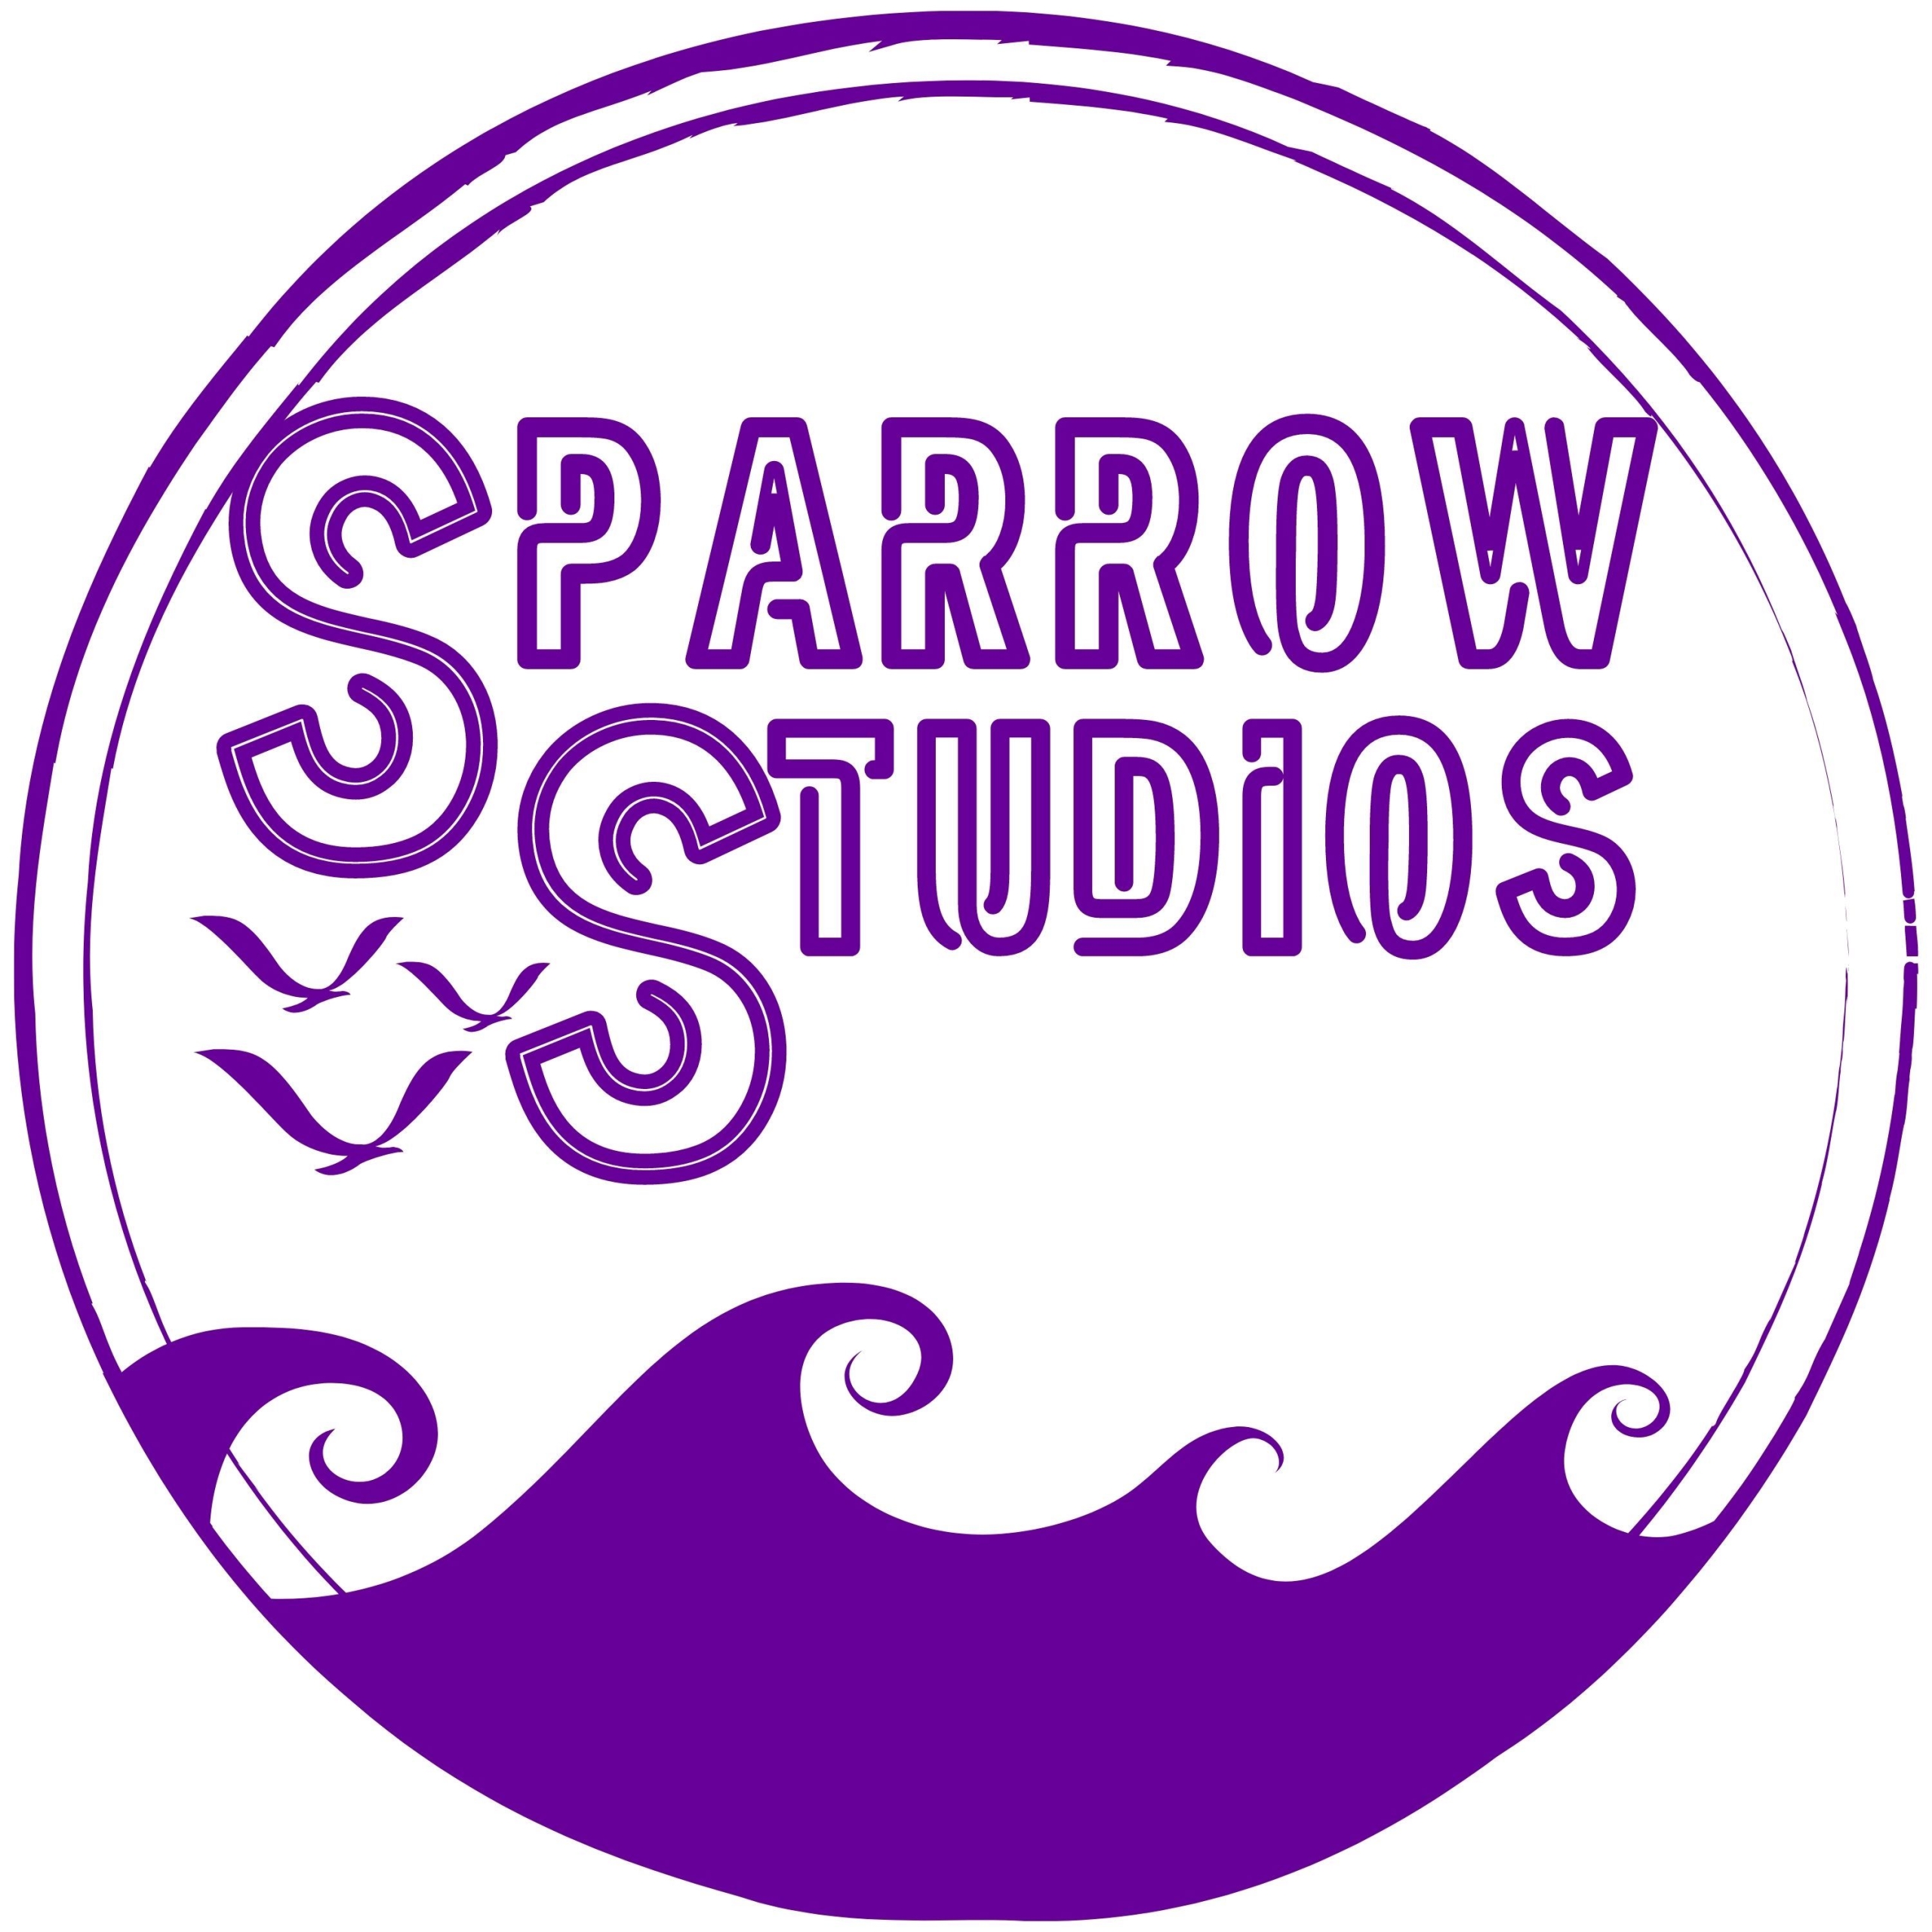 Sparrow Studios